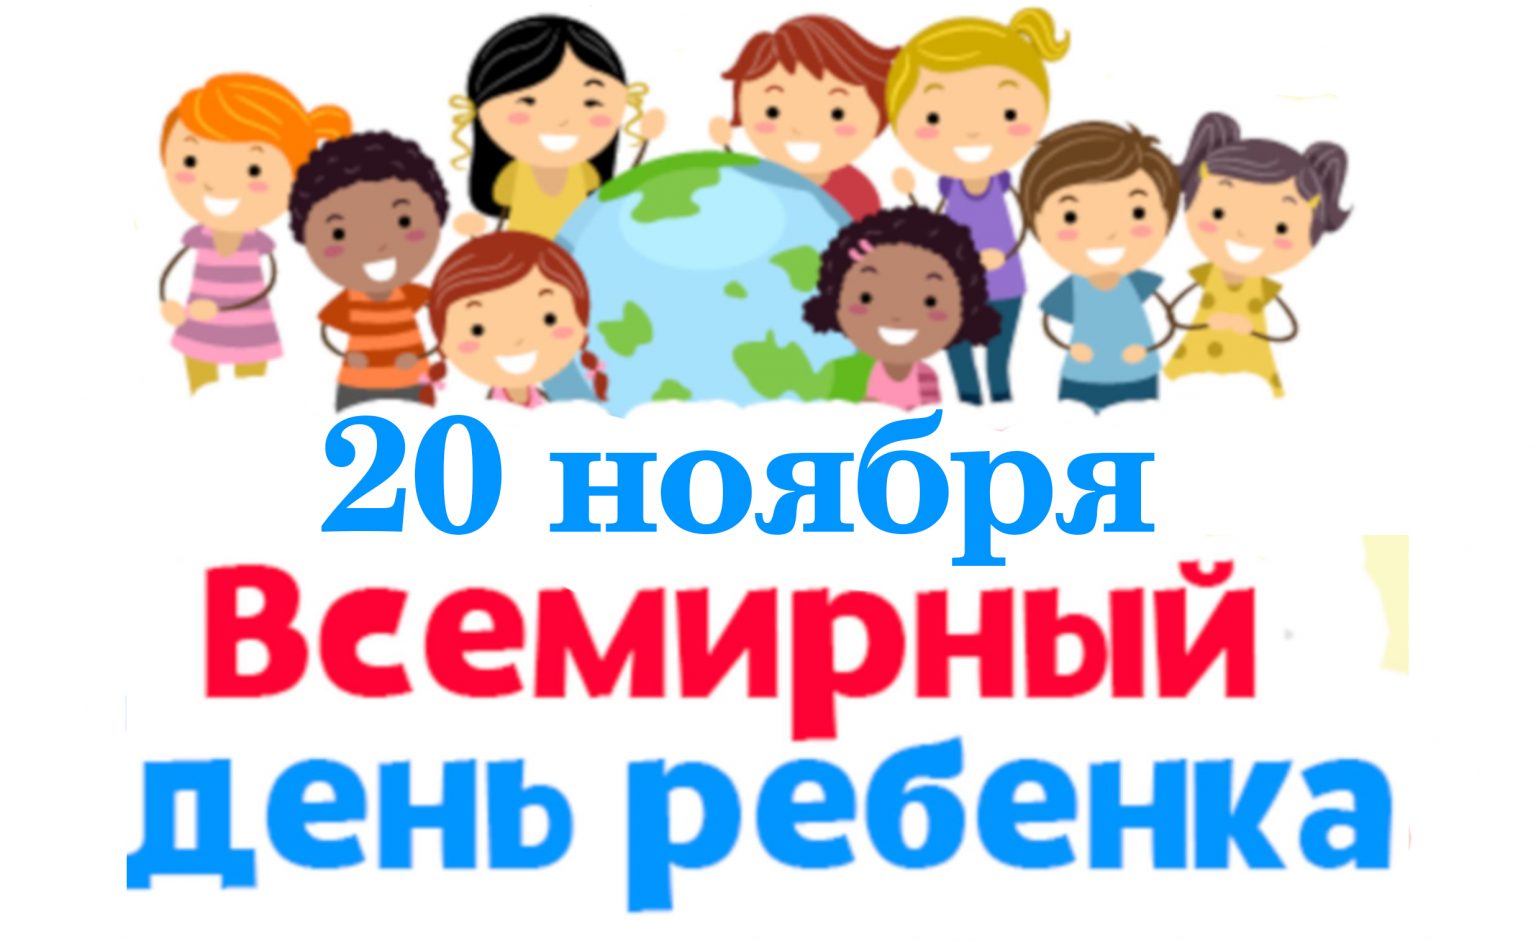 Эмблема Всемирного дня ребенка 20 ноября